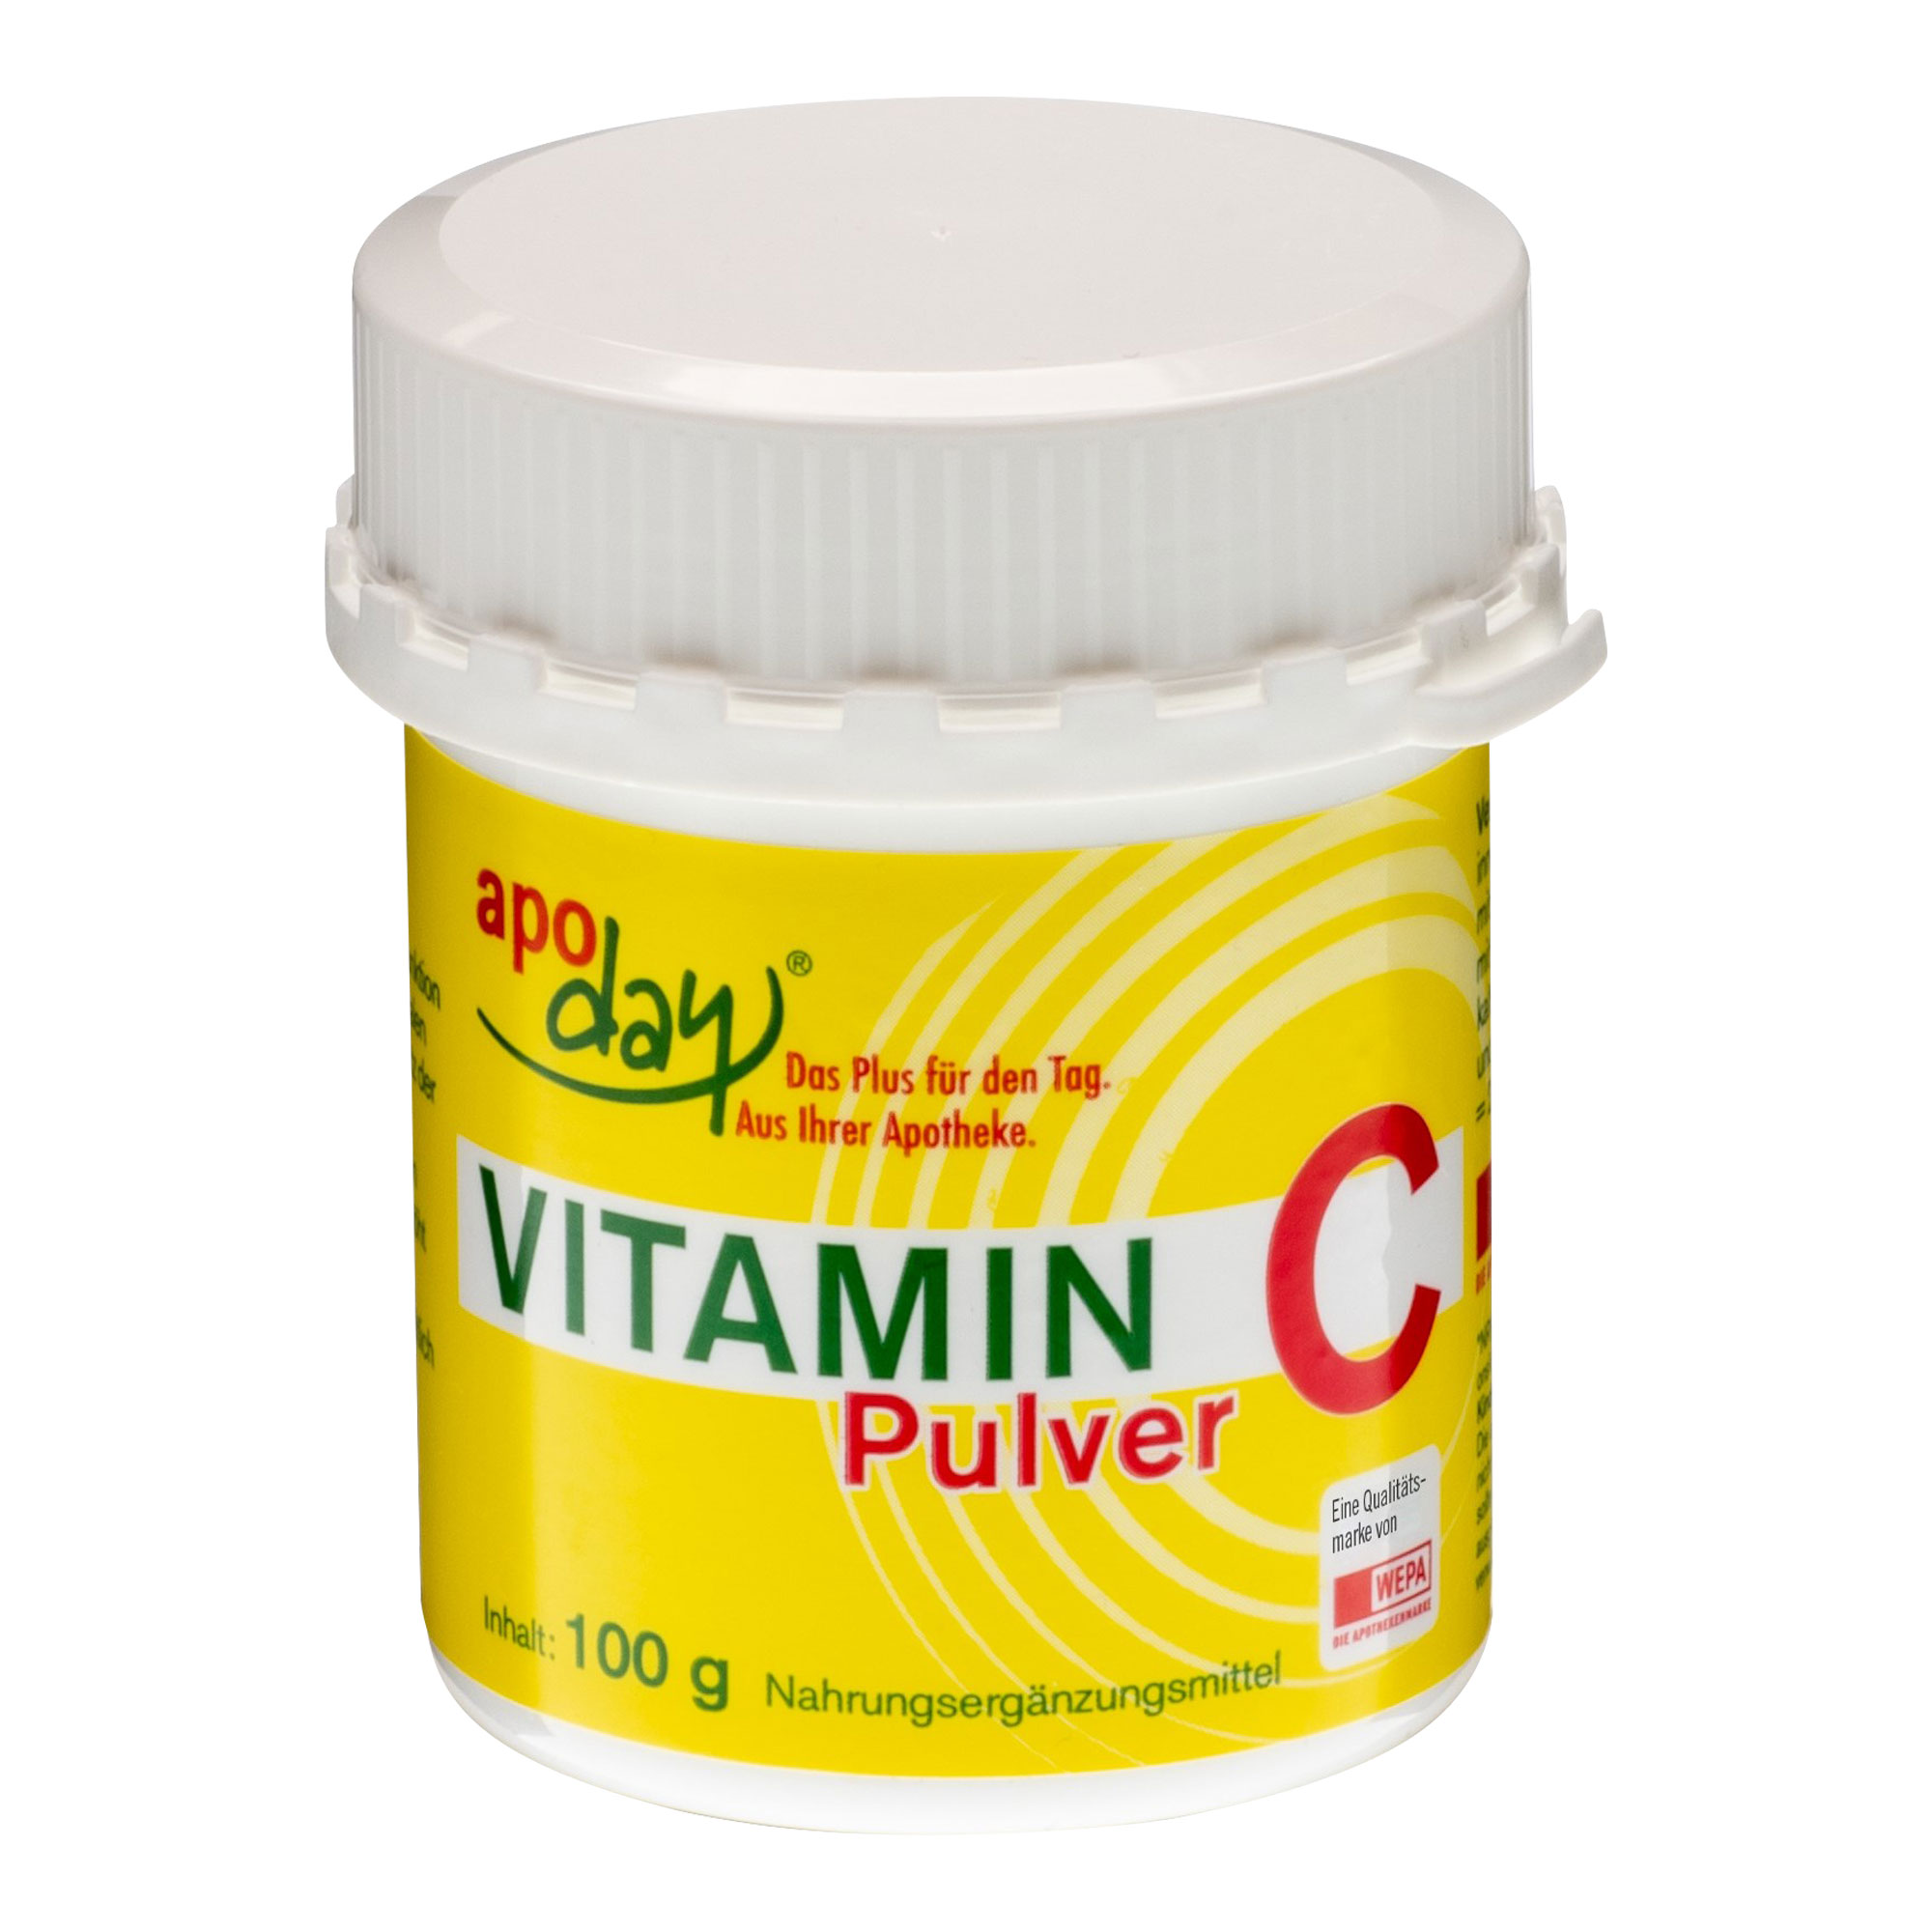 Vitamin C Pulver aus reiner L-Ascorbinsäure.